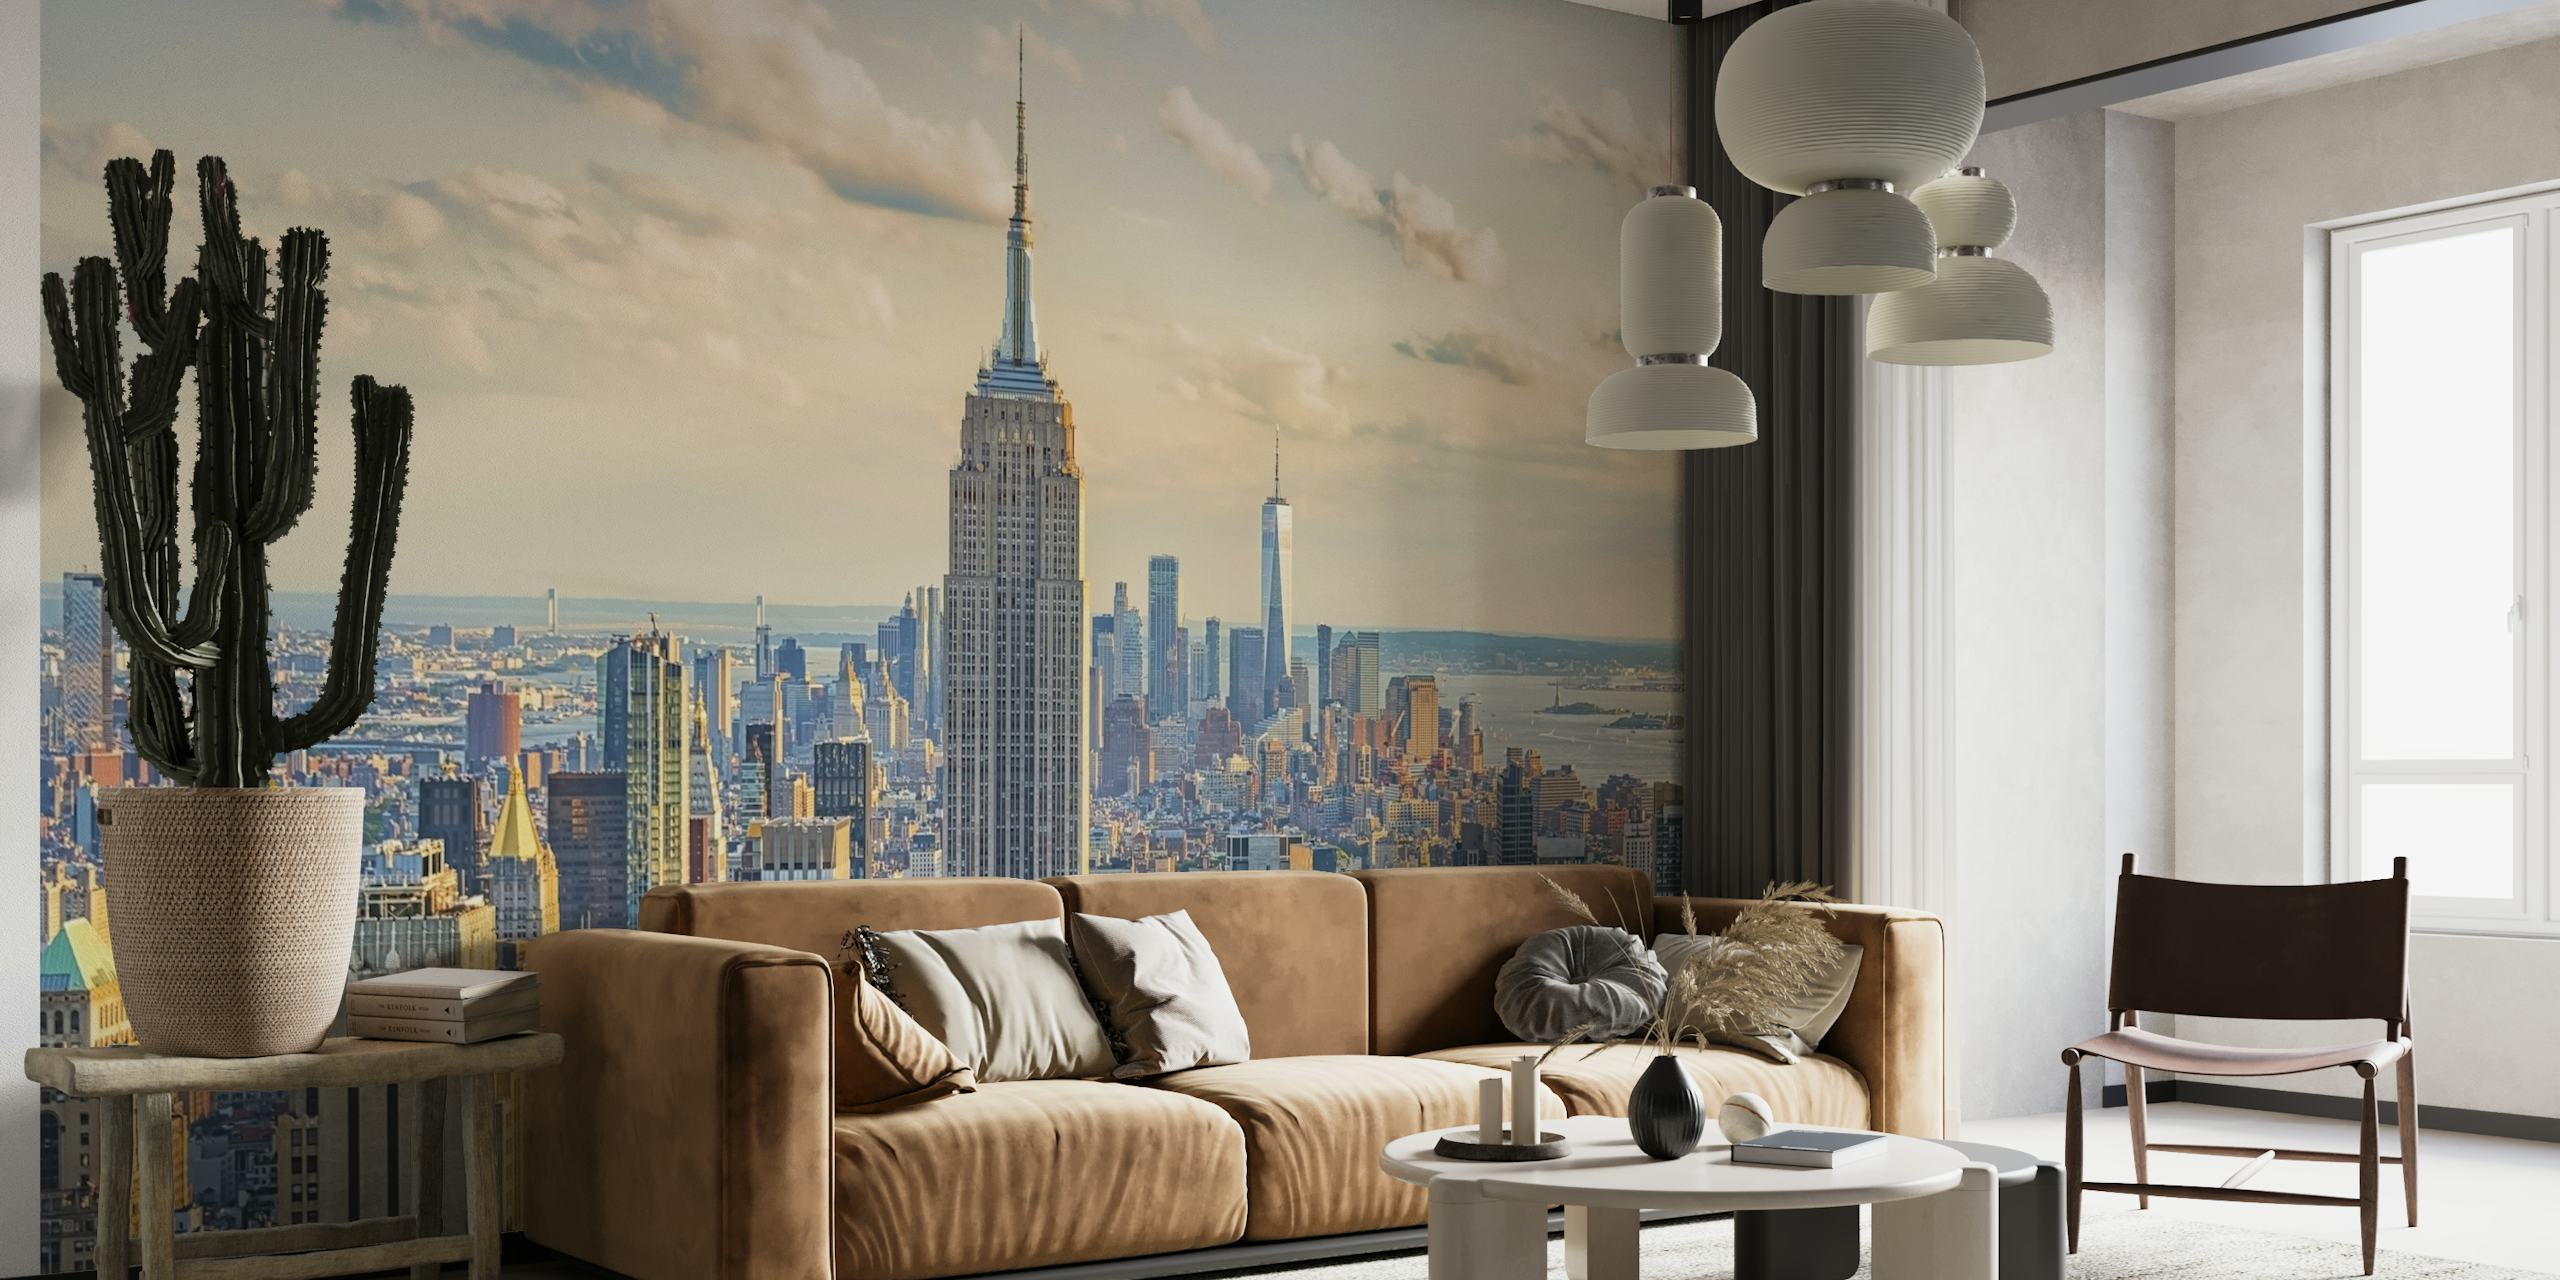 Mural del Empire State Building con el horizonte de la ciudad de Nueva York